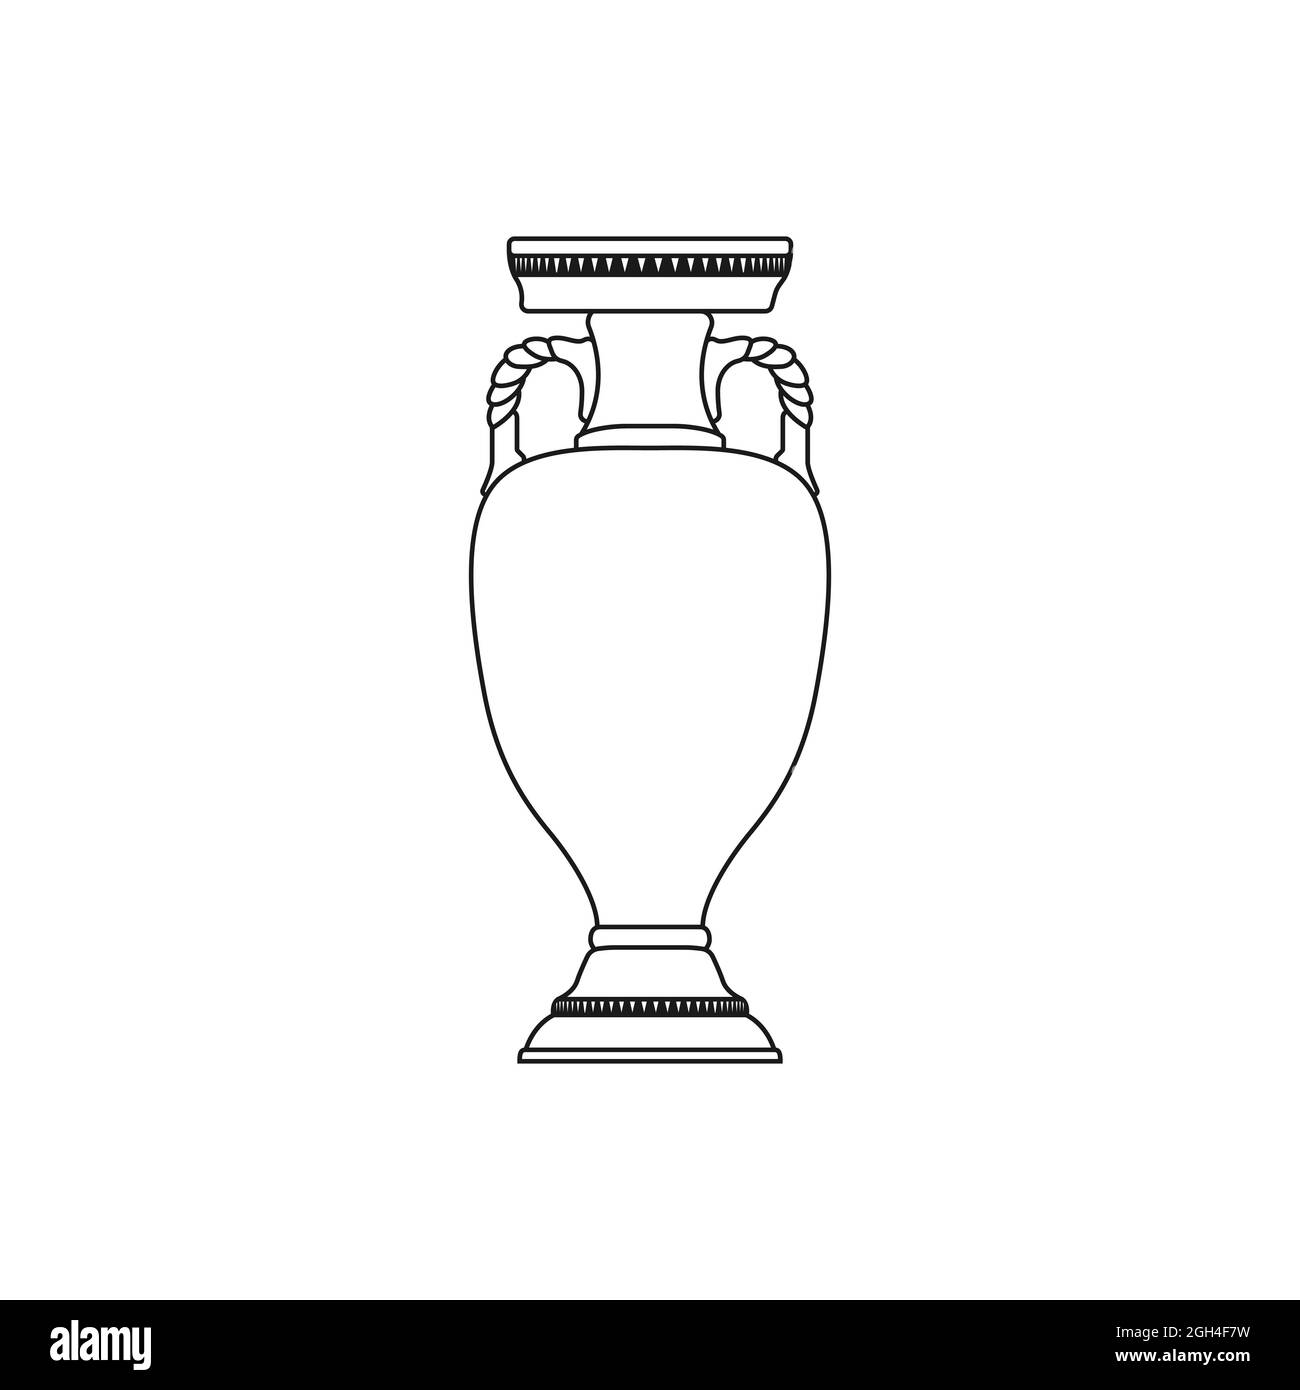 Vektorsymbol für die Fußball-europameisterschaft 2020. Silhouette einer Tasse 2021. Stock Vektor